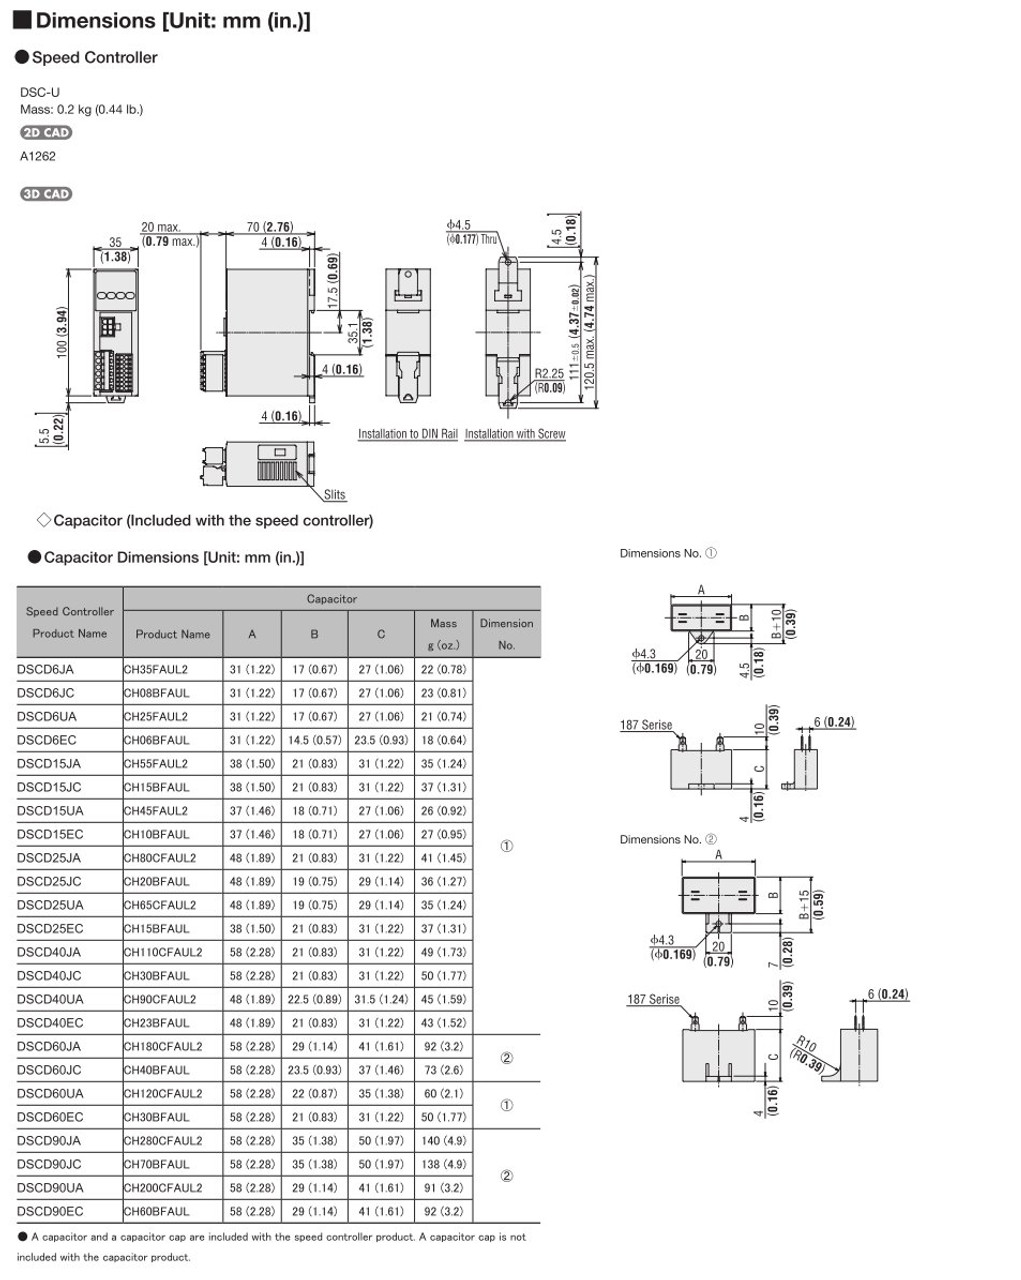 SCM315EC-360A / DSCD15EC - Dimensions